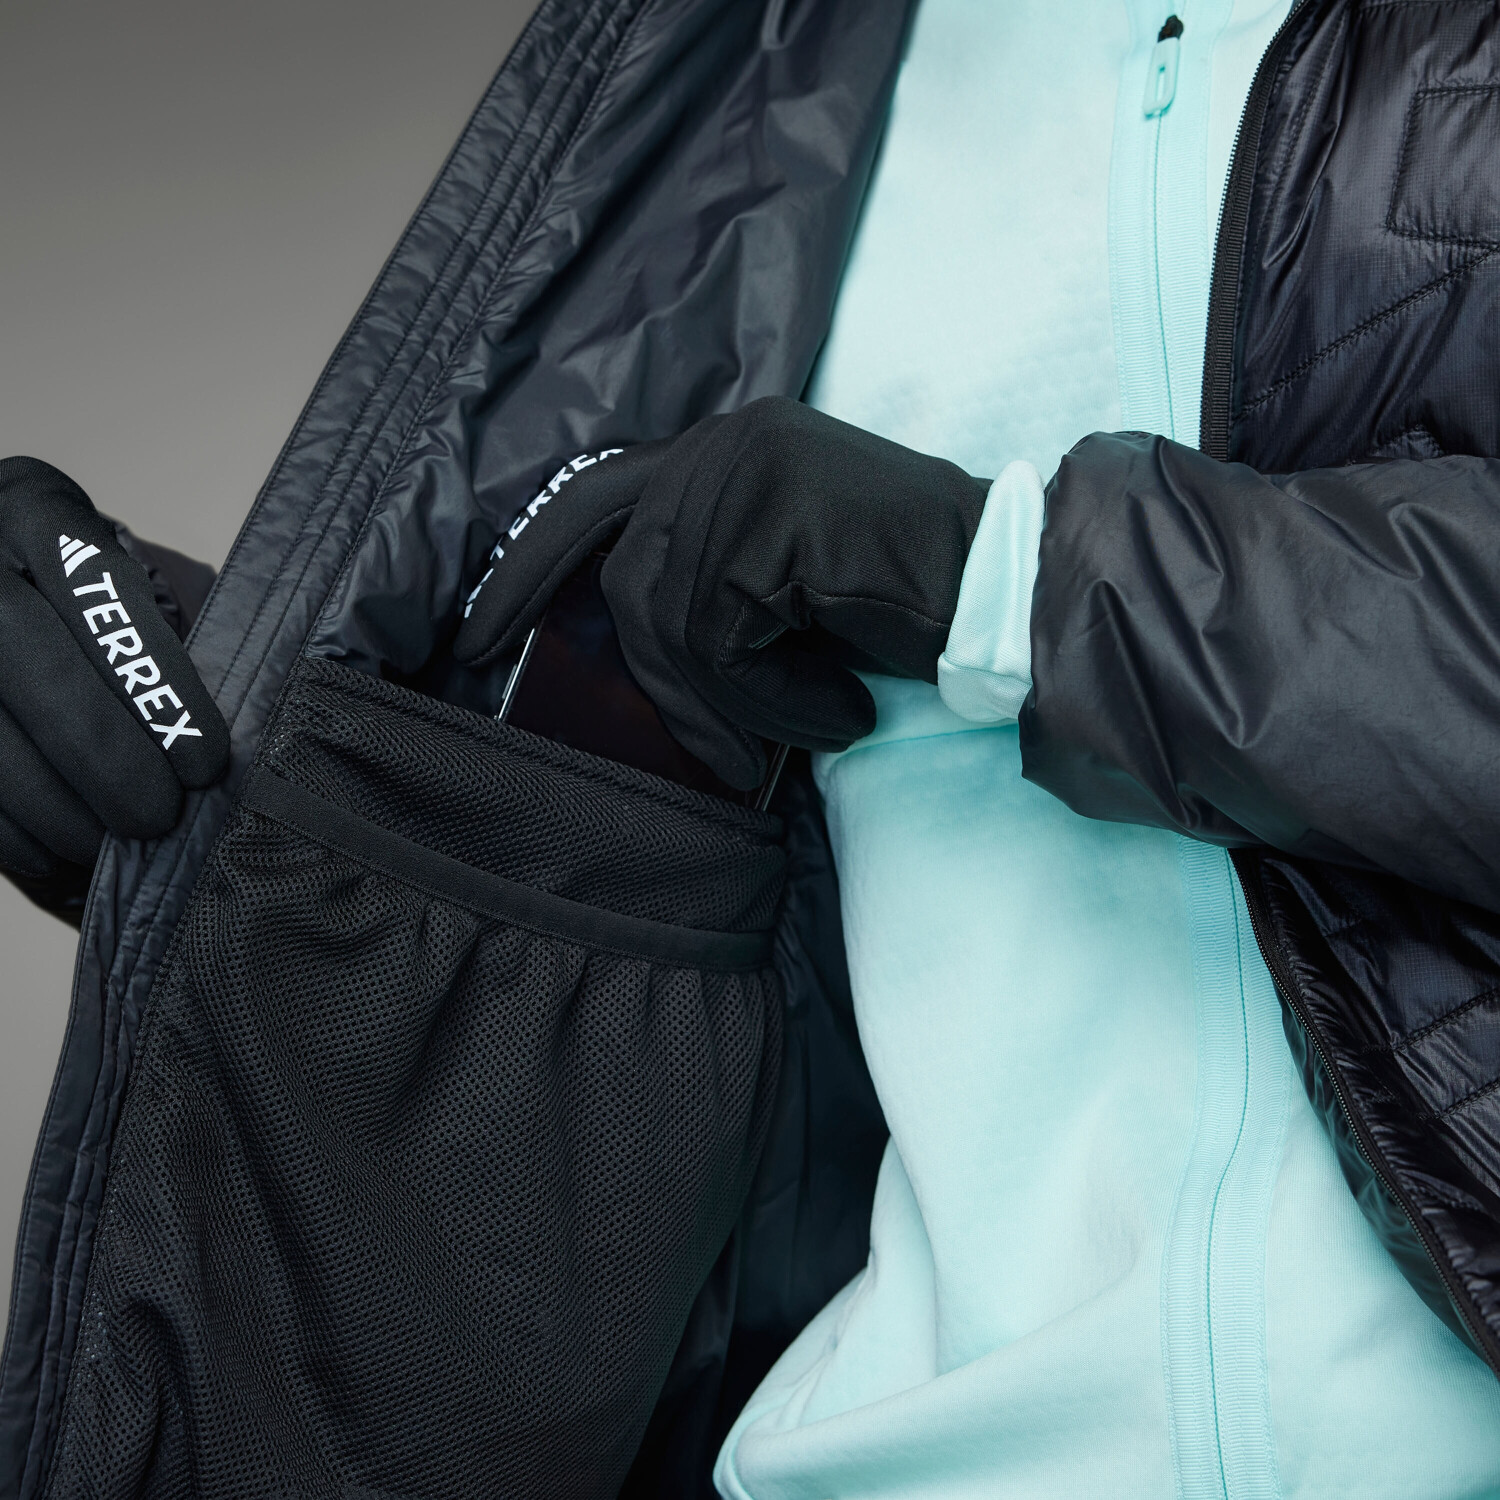 Adidas Woman Terrex Xperior € black Preisvergleich bei | (IB4183) Jacket 129,59 ab PrimaLoft Varilite Hooded